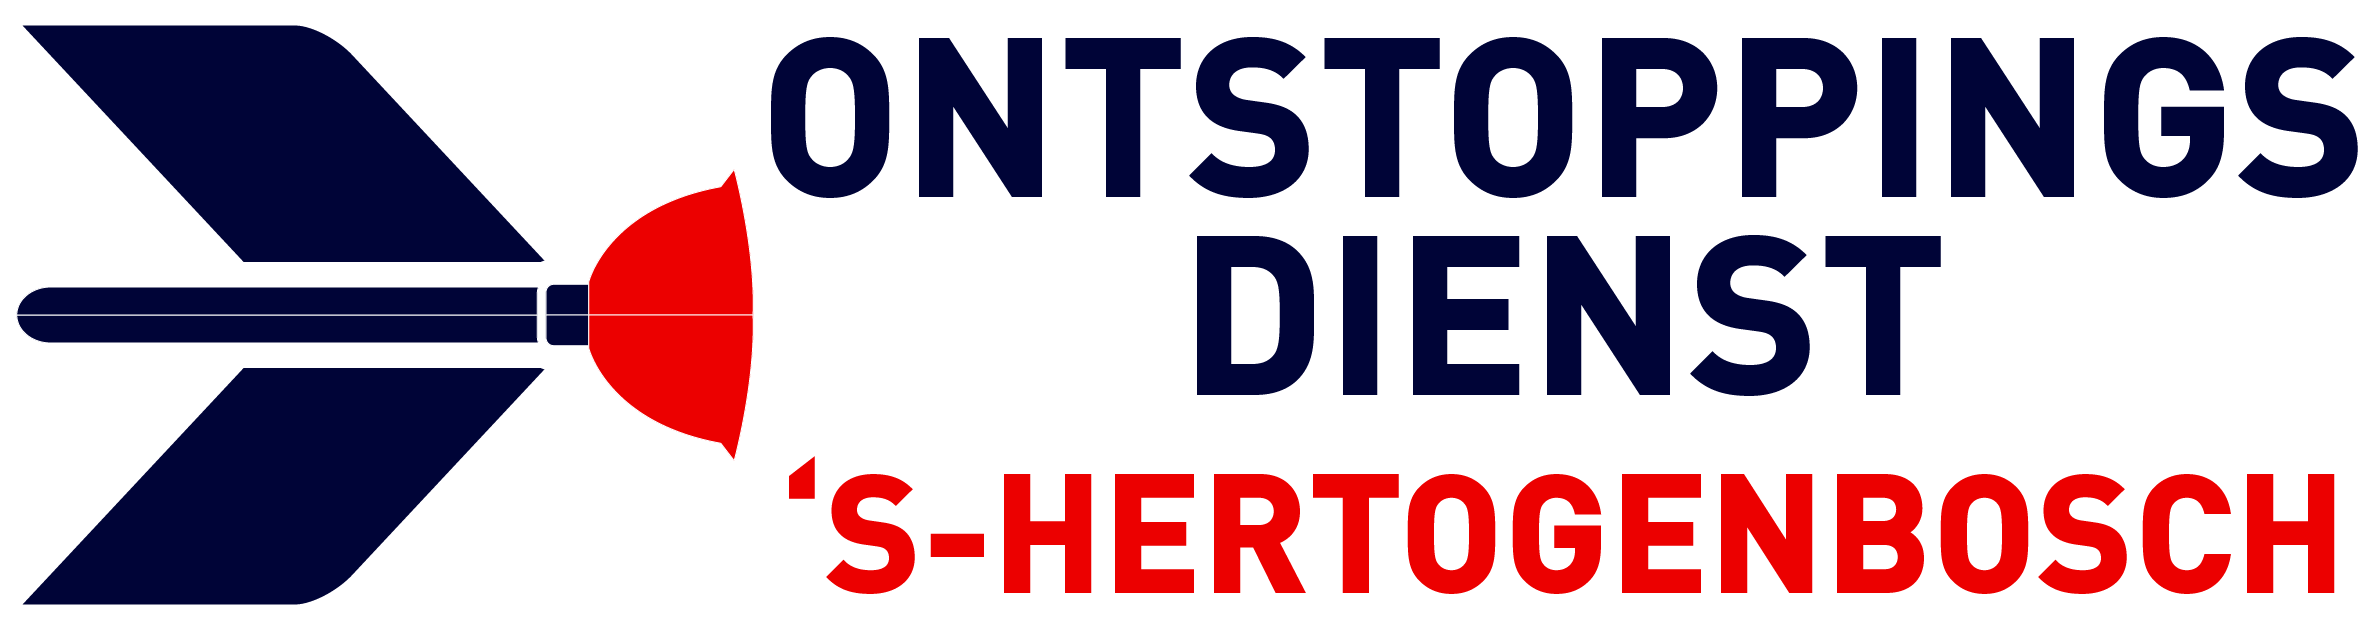 Ontstoppingsdienst s-Hertogenbosch logo